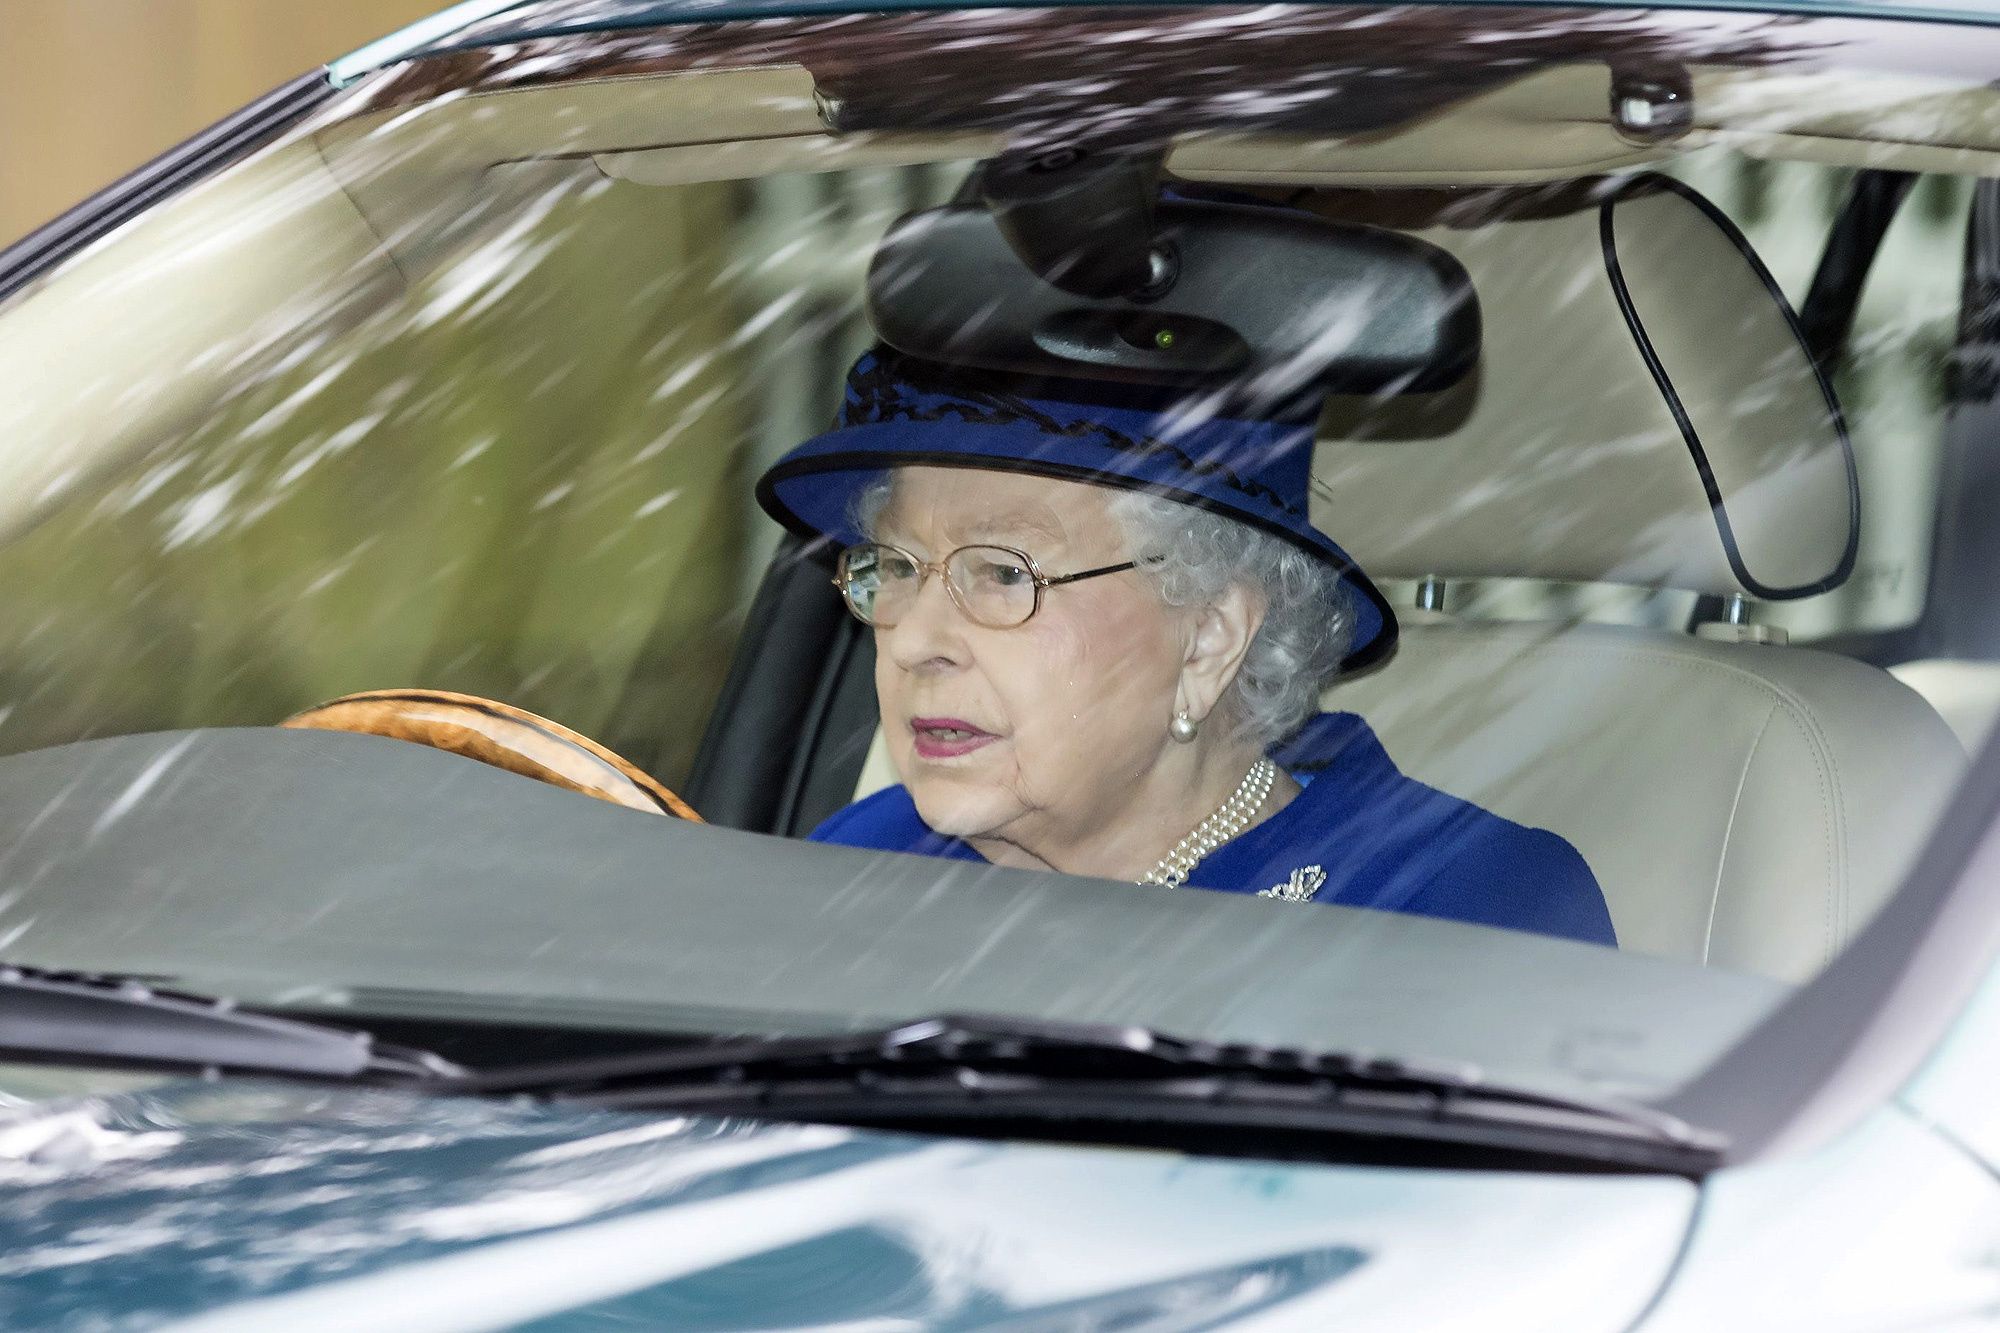 Прихоти Елизаветы II: почему 93-летняя королева иногда ведёт себя странно?